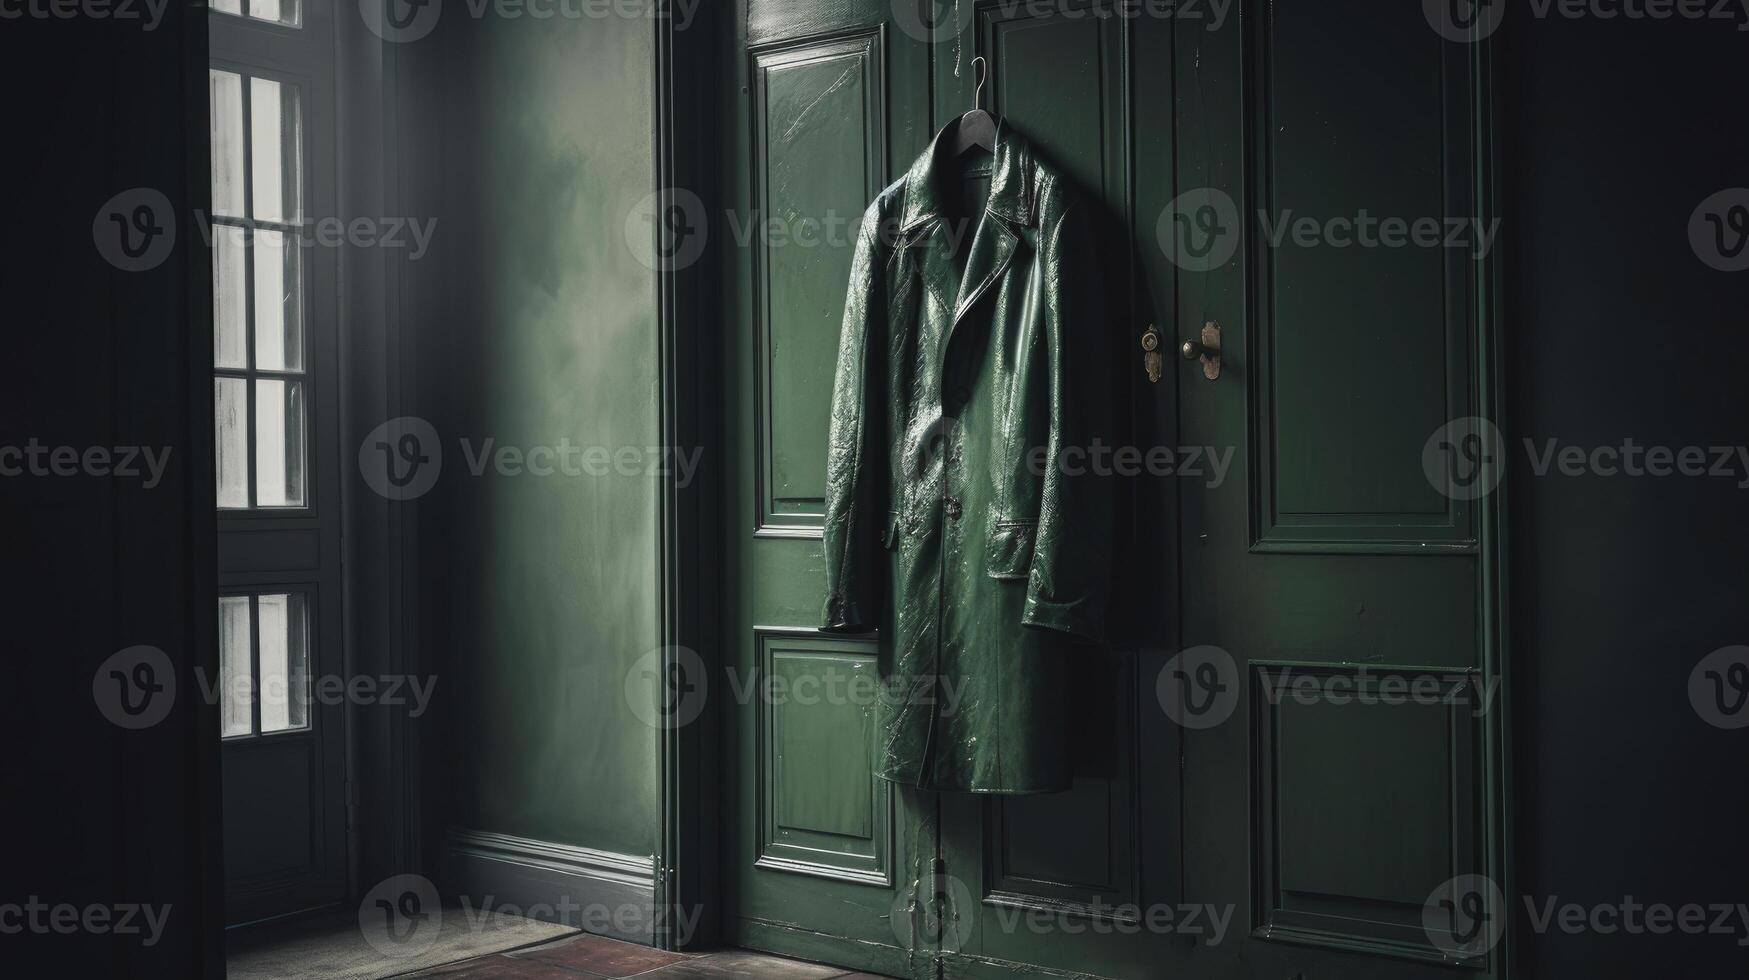 ai gegenereerd afbeelding. diep donker groen jas hangende Aan een deur in de klassiek interieur foto